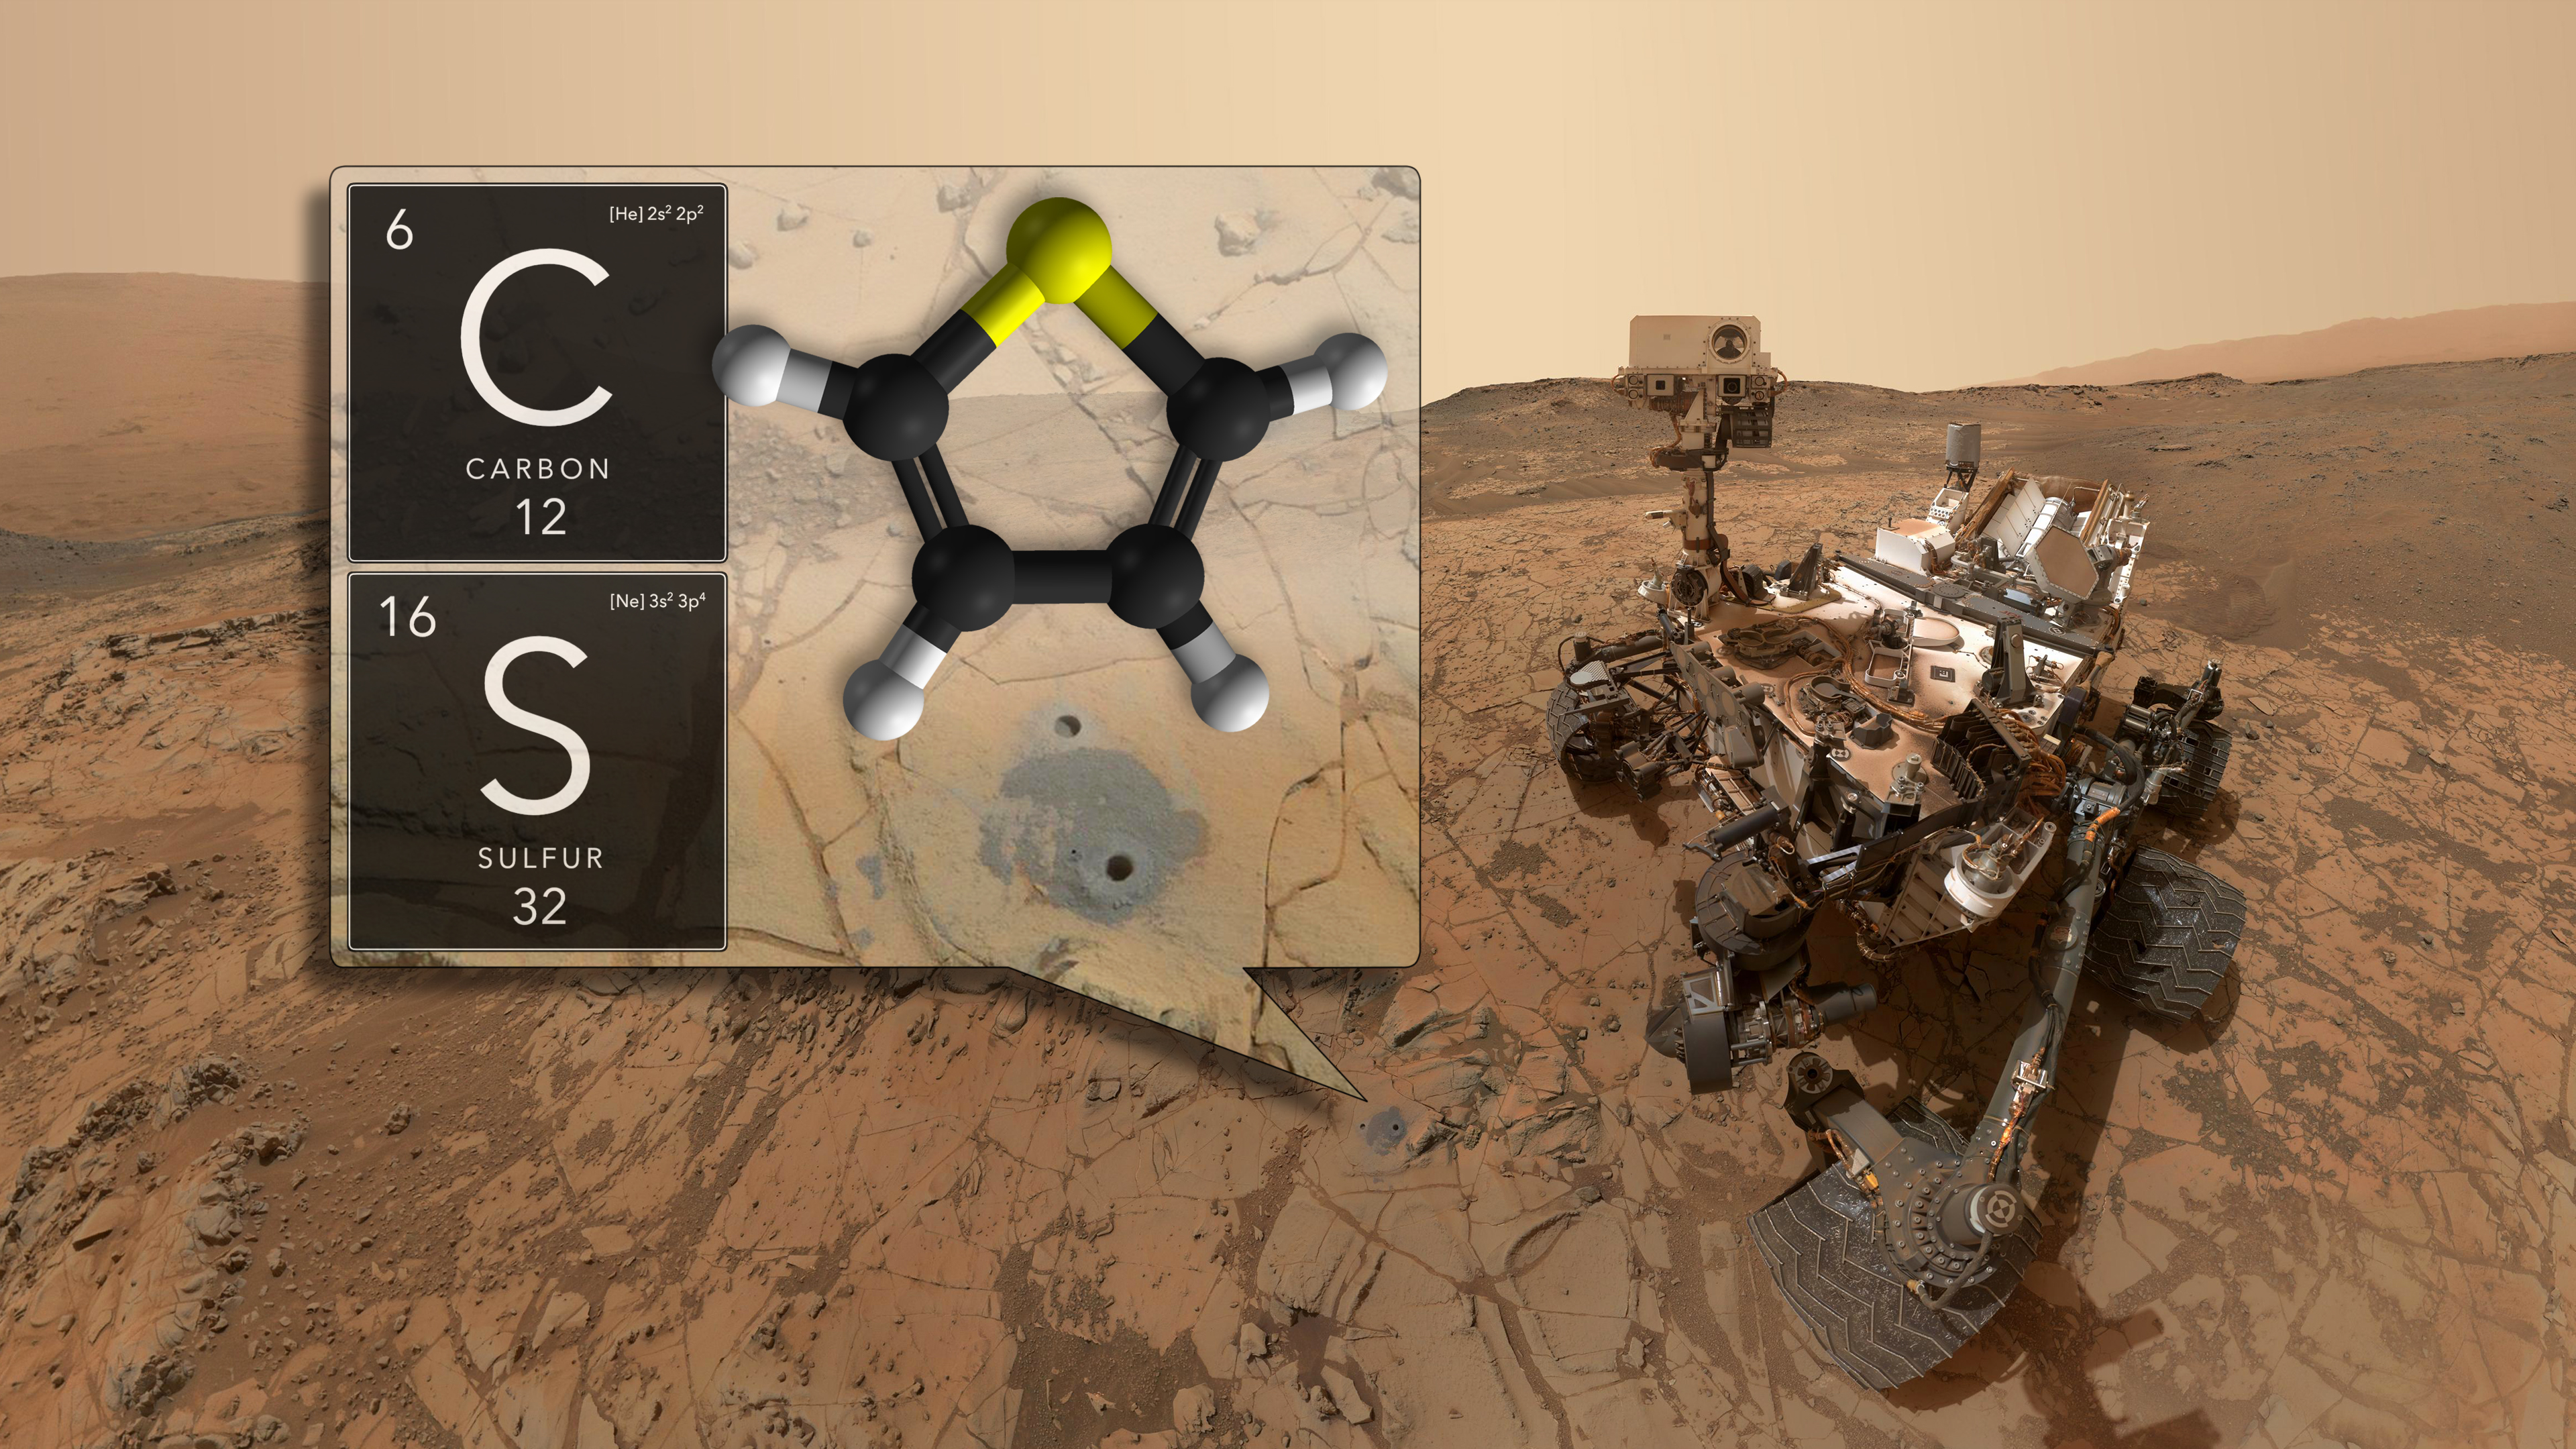 V těch dvou vyvrtaných dírkách na dně kráteru našlo vozítko Curiosity kerogen starý 3,5 miliardy let obsahující thiofen aromatickou sloučeninu uhlíku a síry. Kredit: NASA.gov